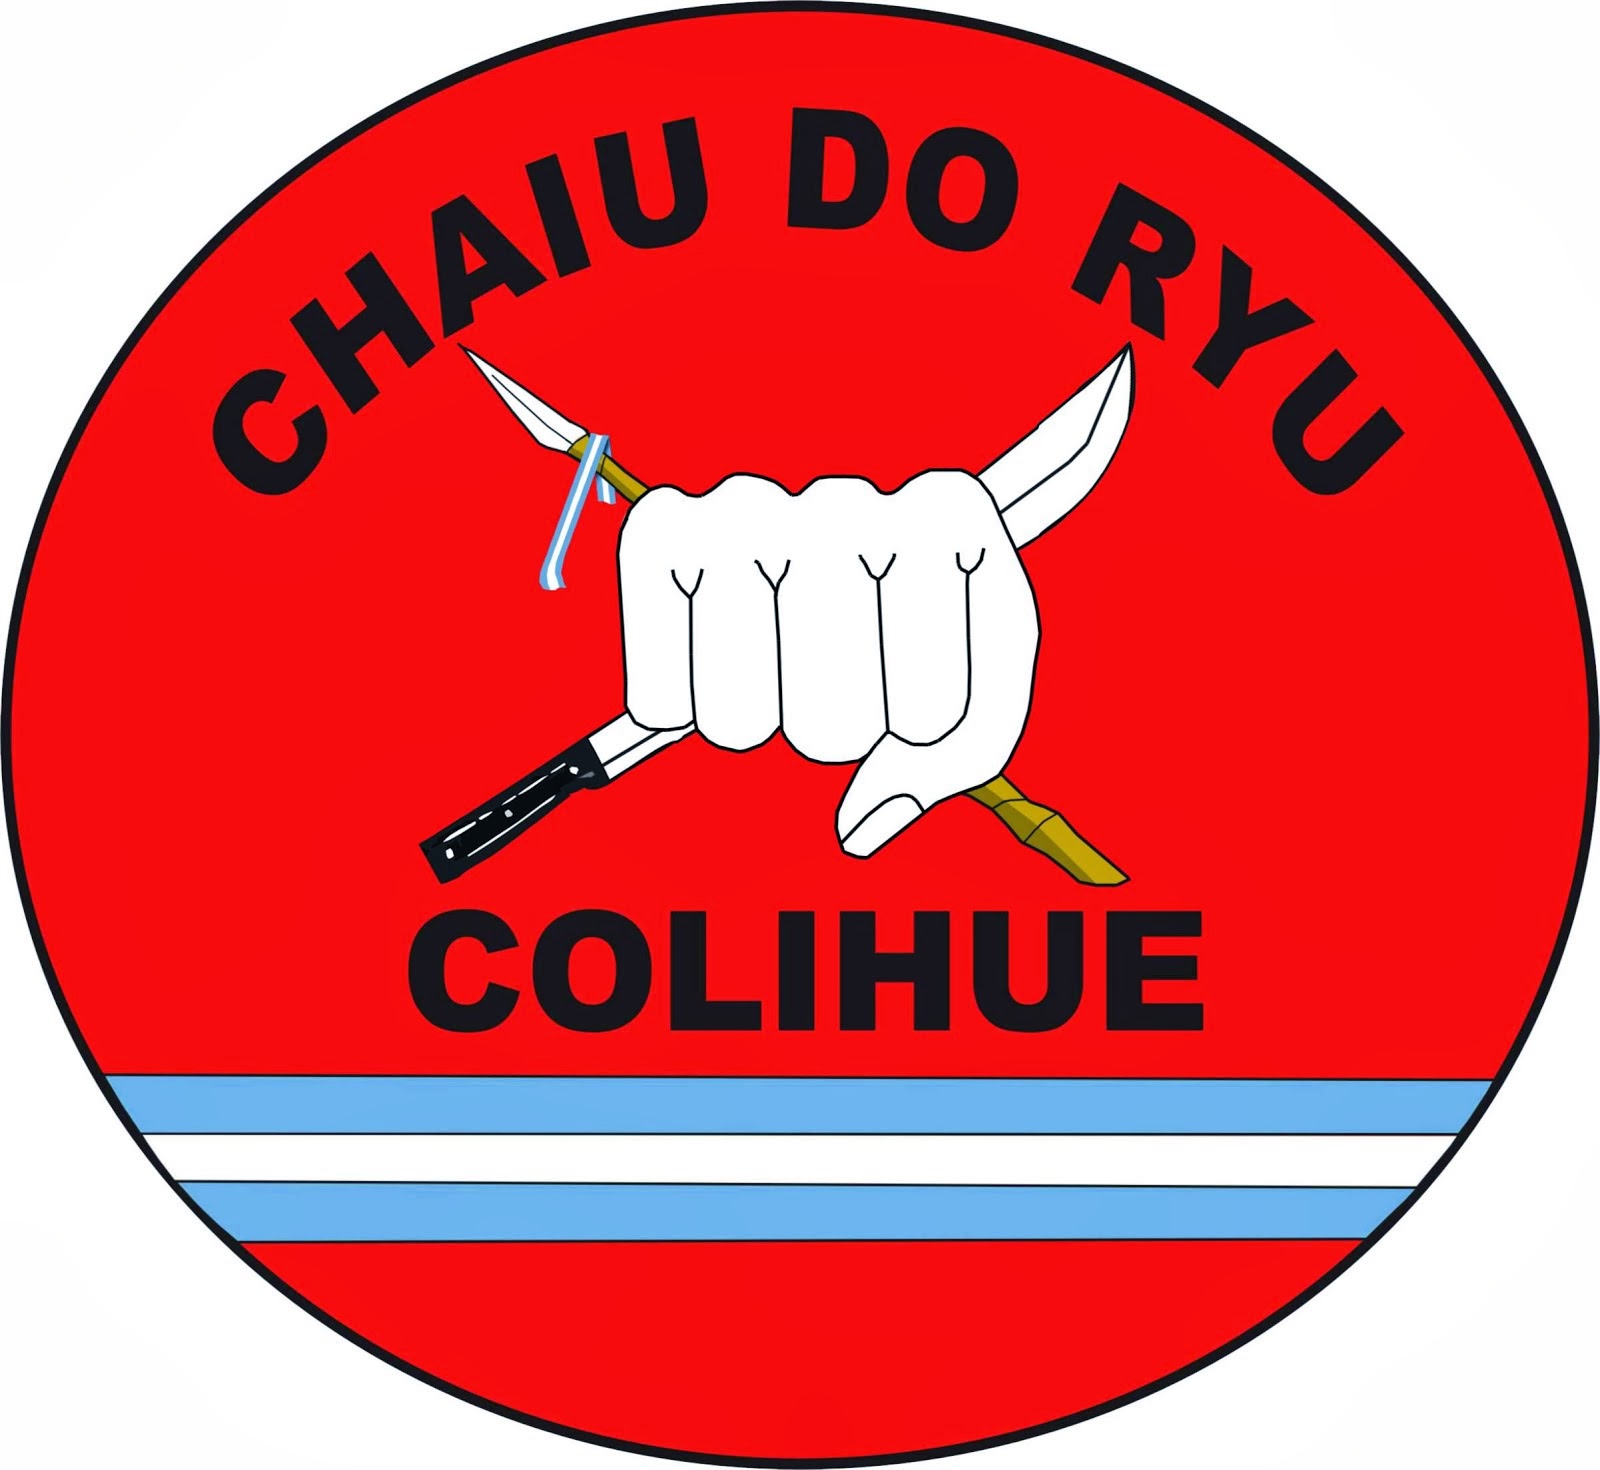 Escudo Chaiu Do Ryu COLIHUE